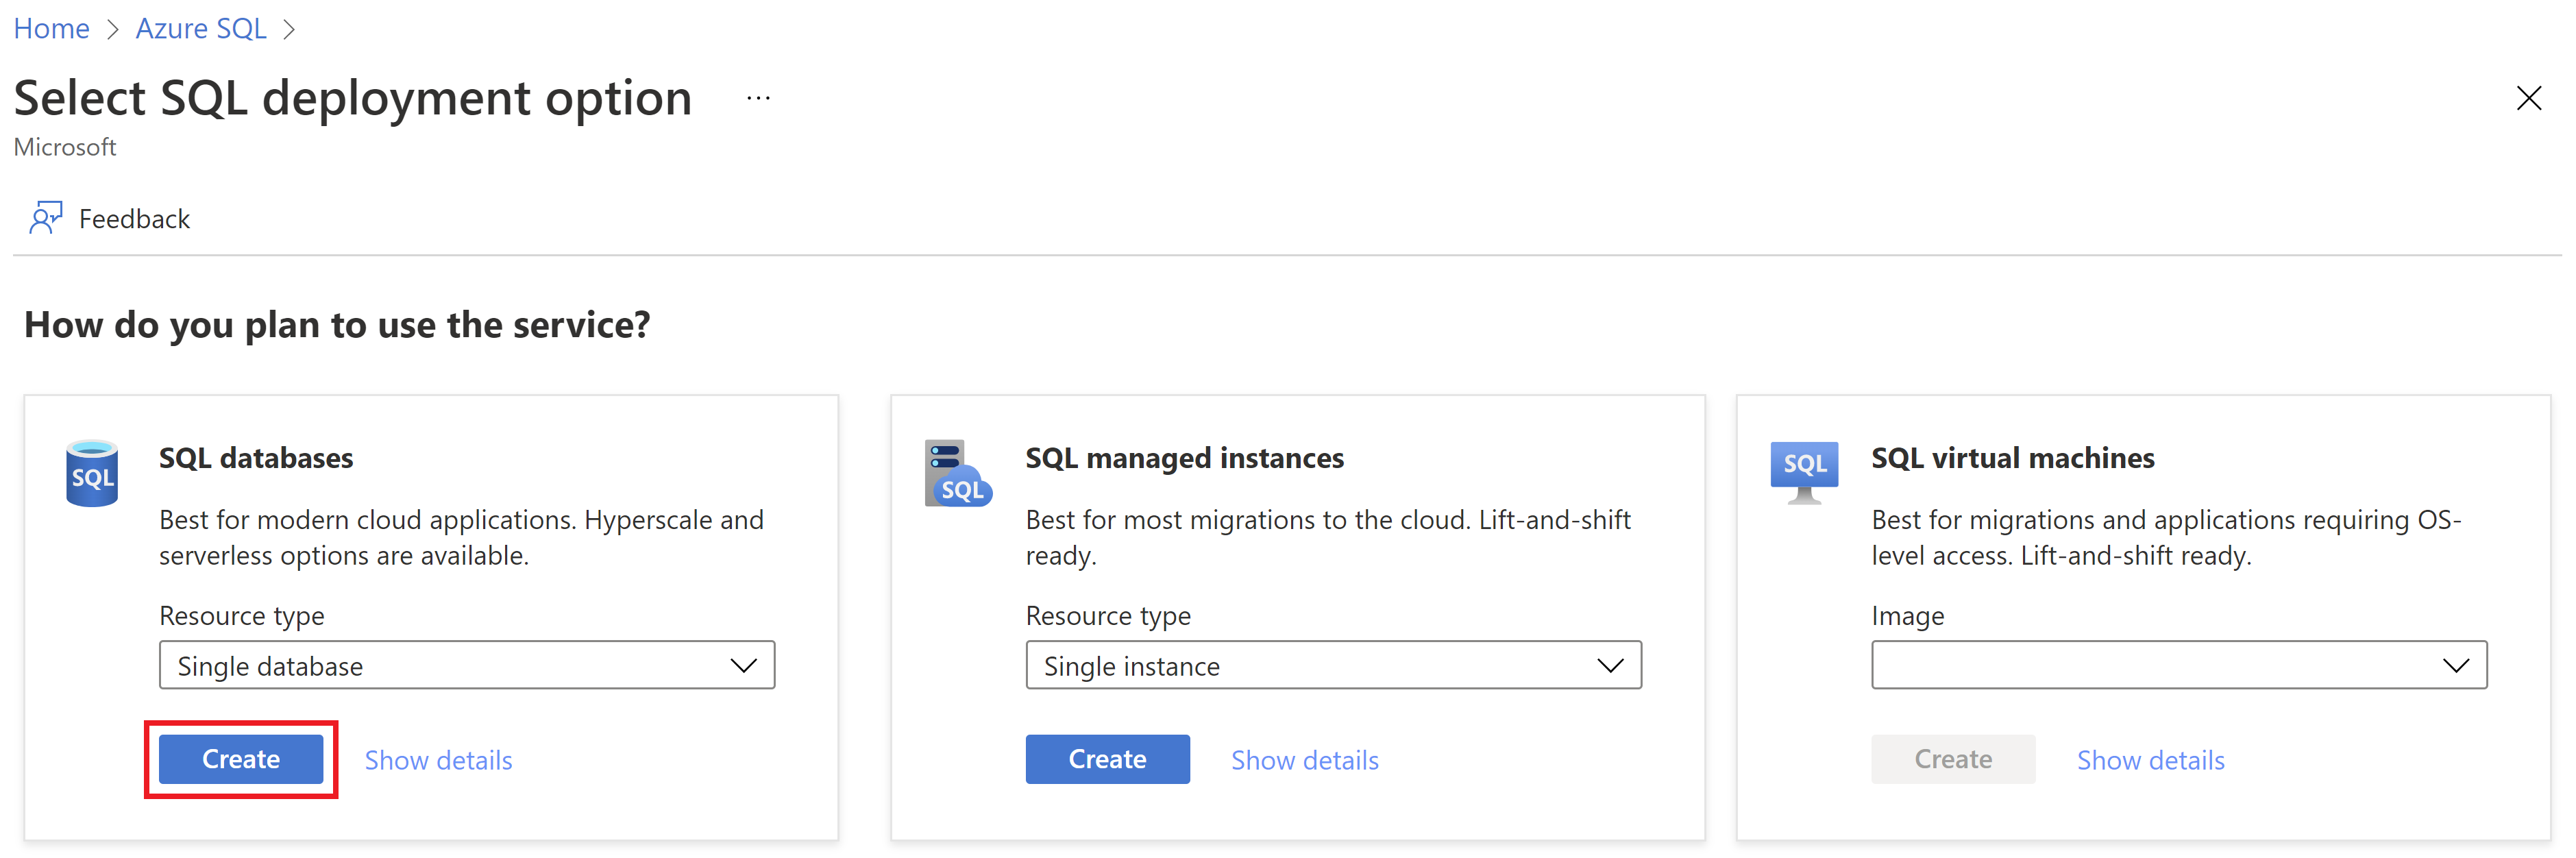 Azure 入口網站中 [選取 SQL 部署] 選項頁面的螢幕擷取畫面。